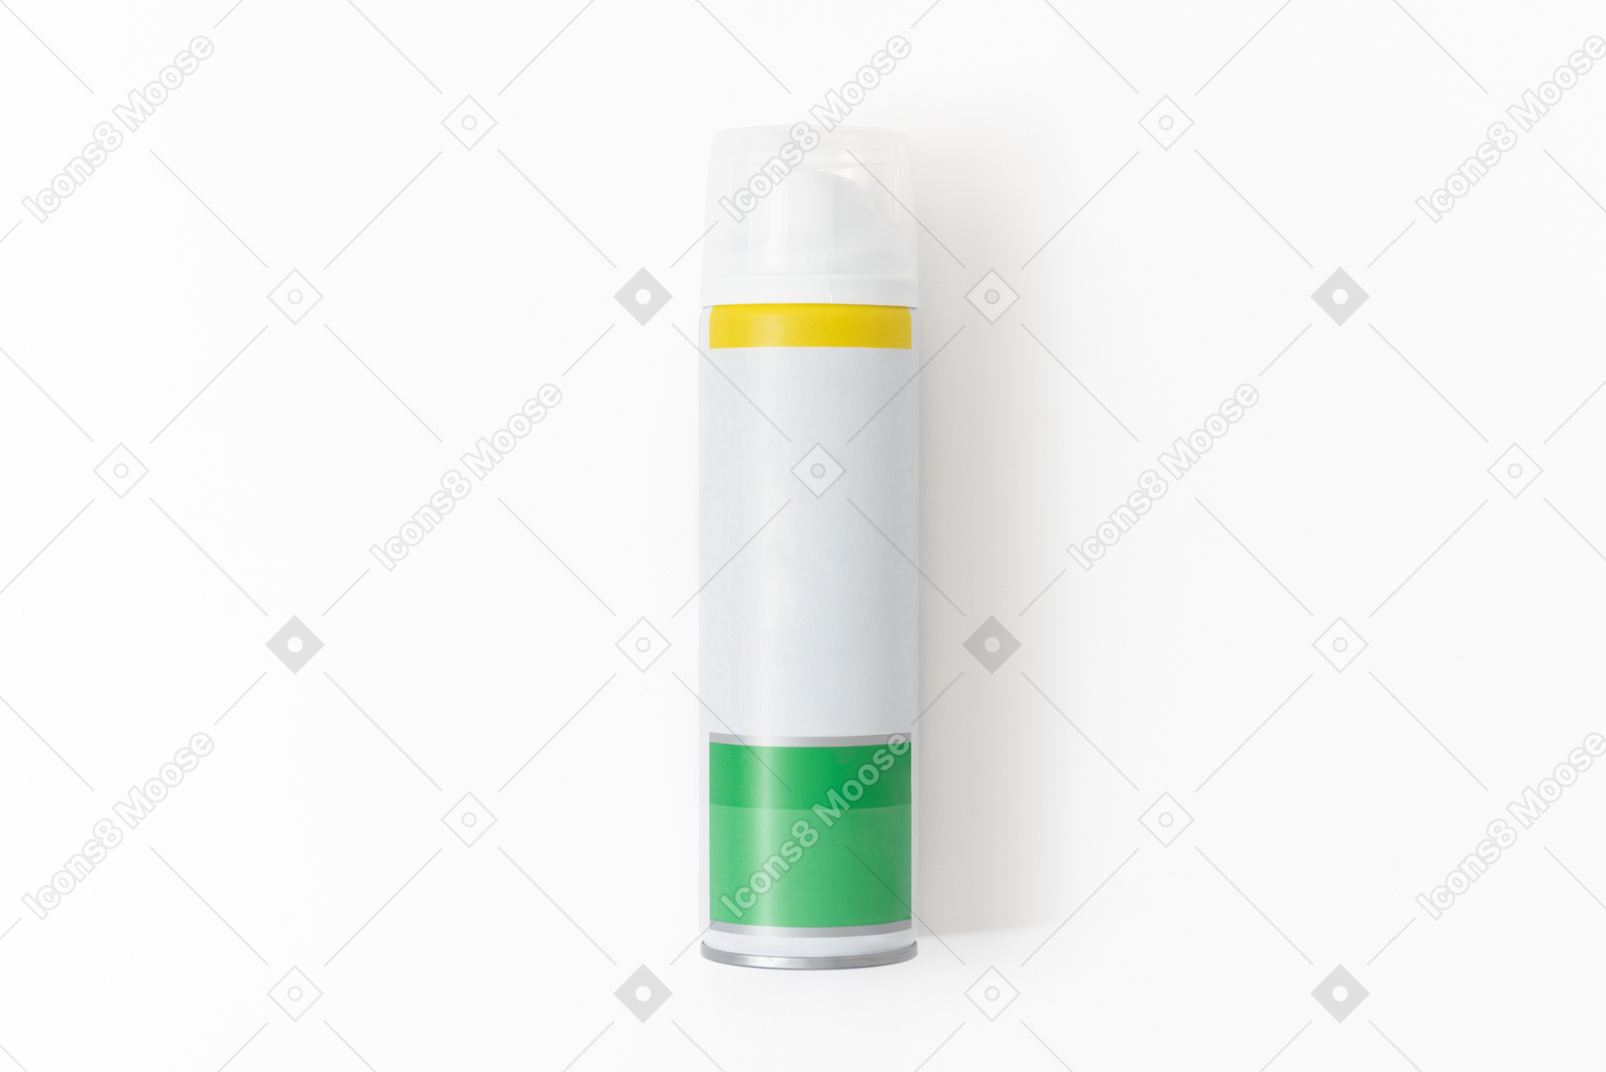 Макет бутылки дезодоранта